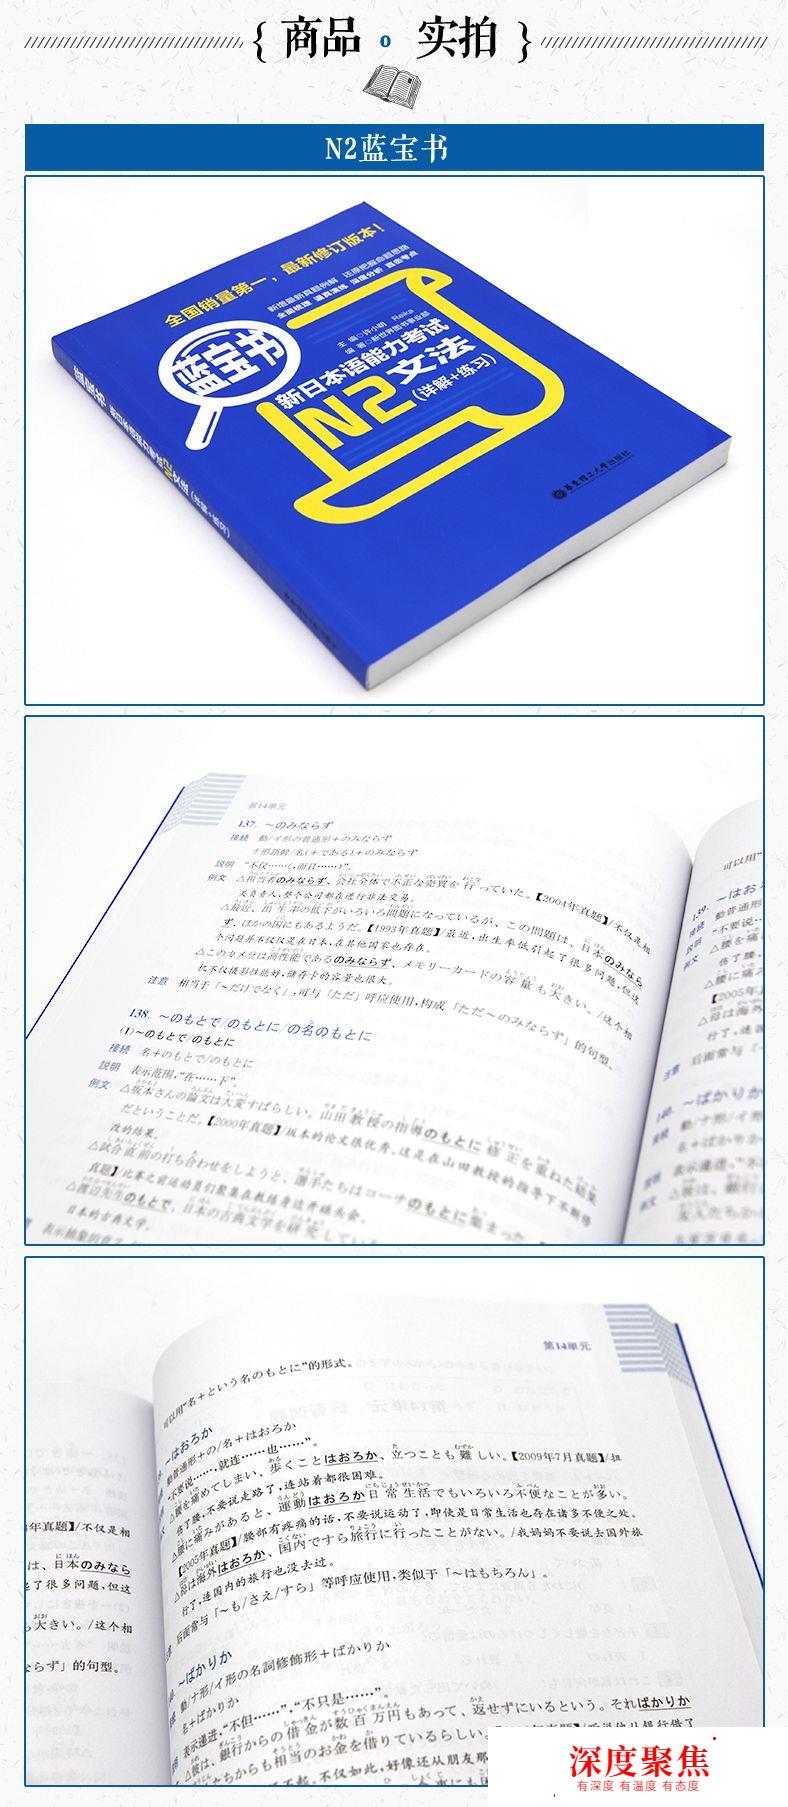 「福利」能力考N1N2语法蓝宝书100本包邮免费送